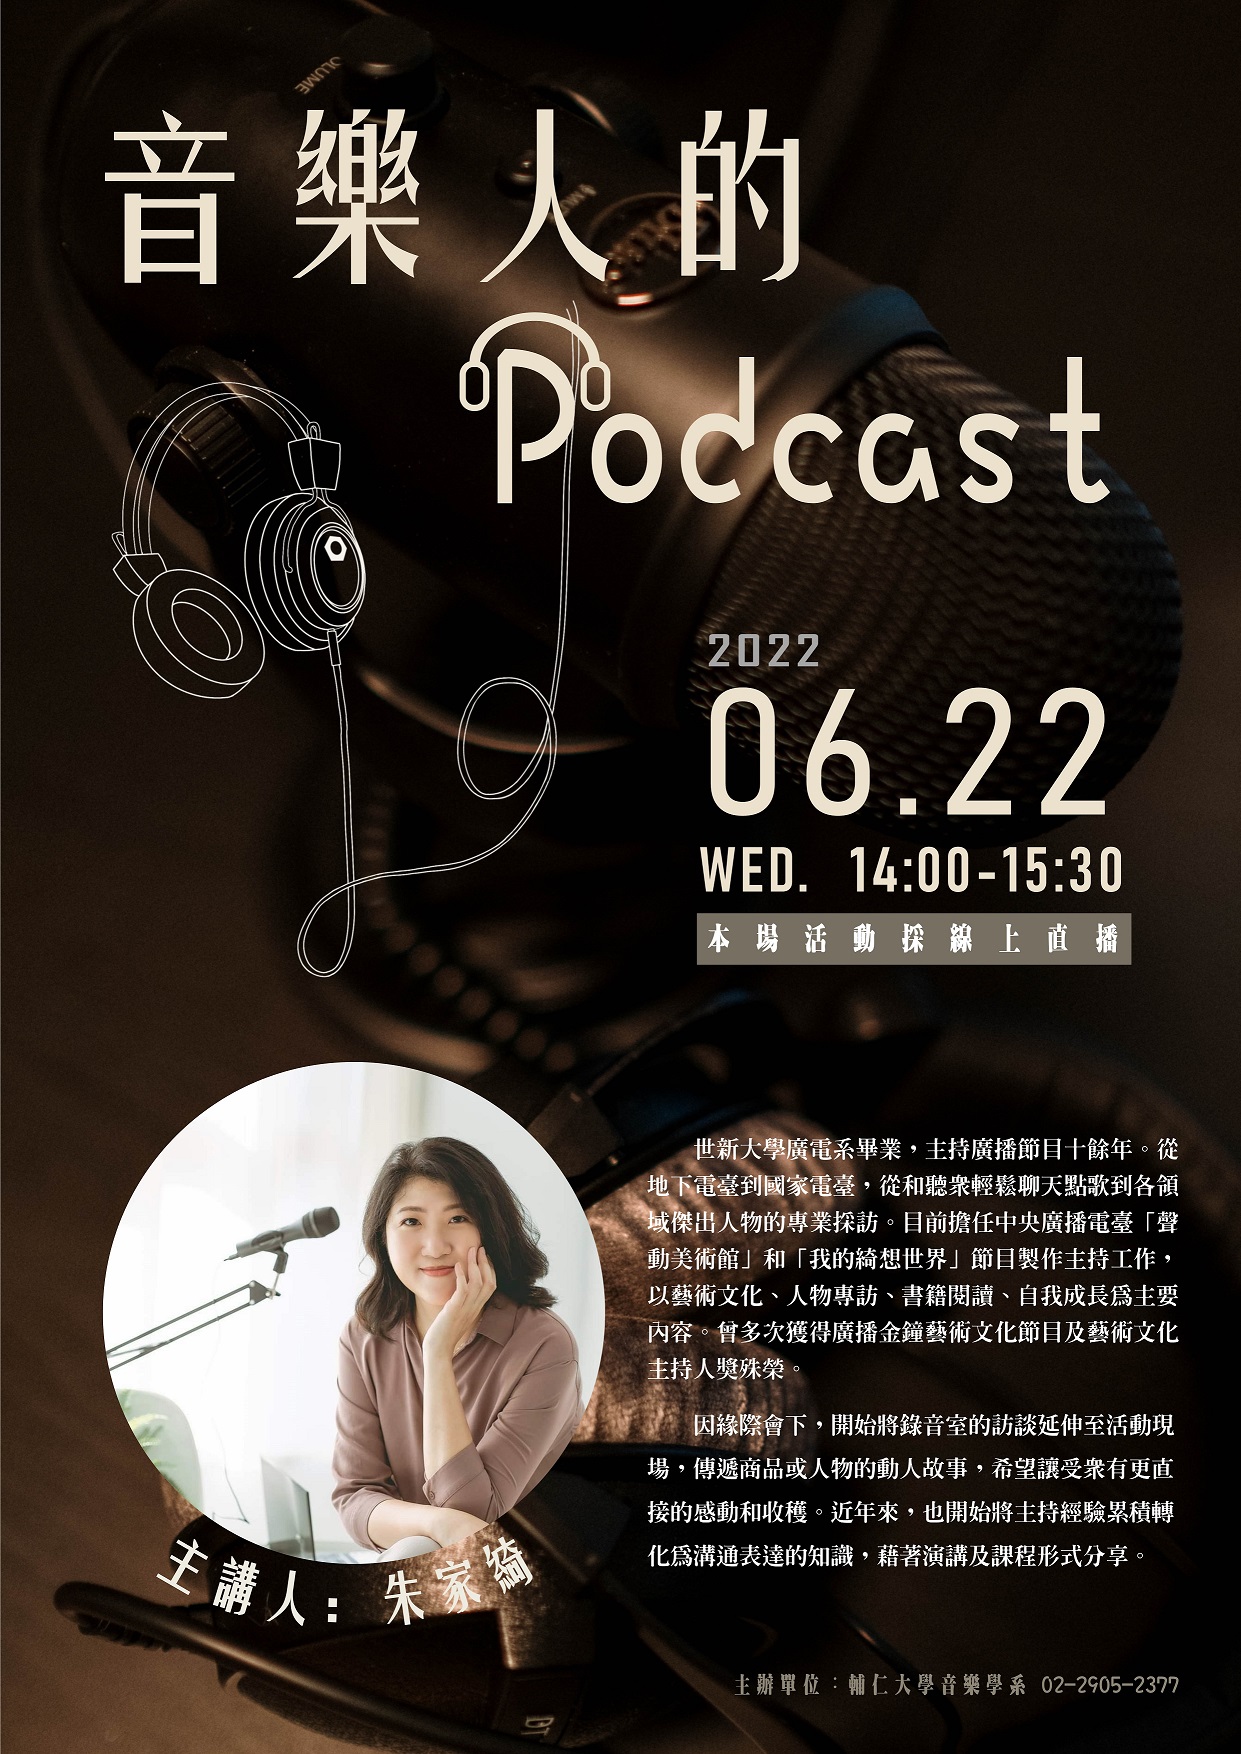 《活動》2022.6.22 朱家綺講座《音樂人的Podcast》